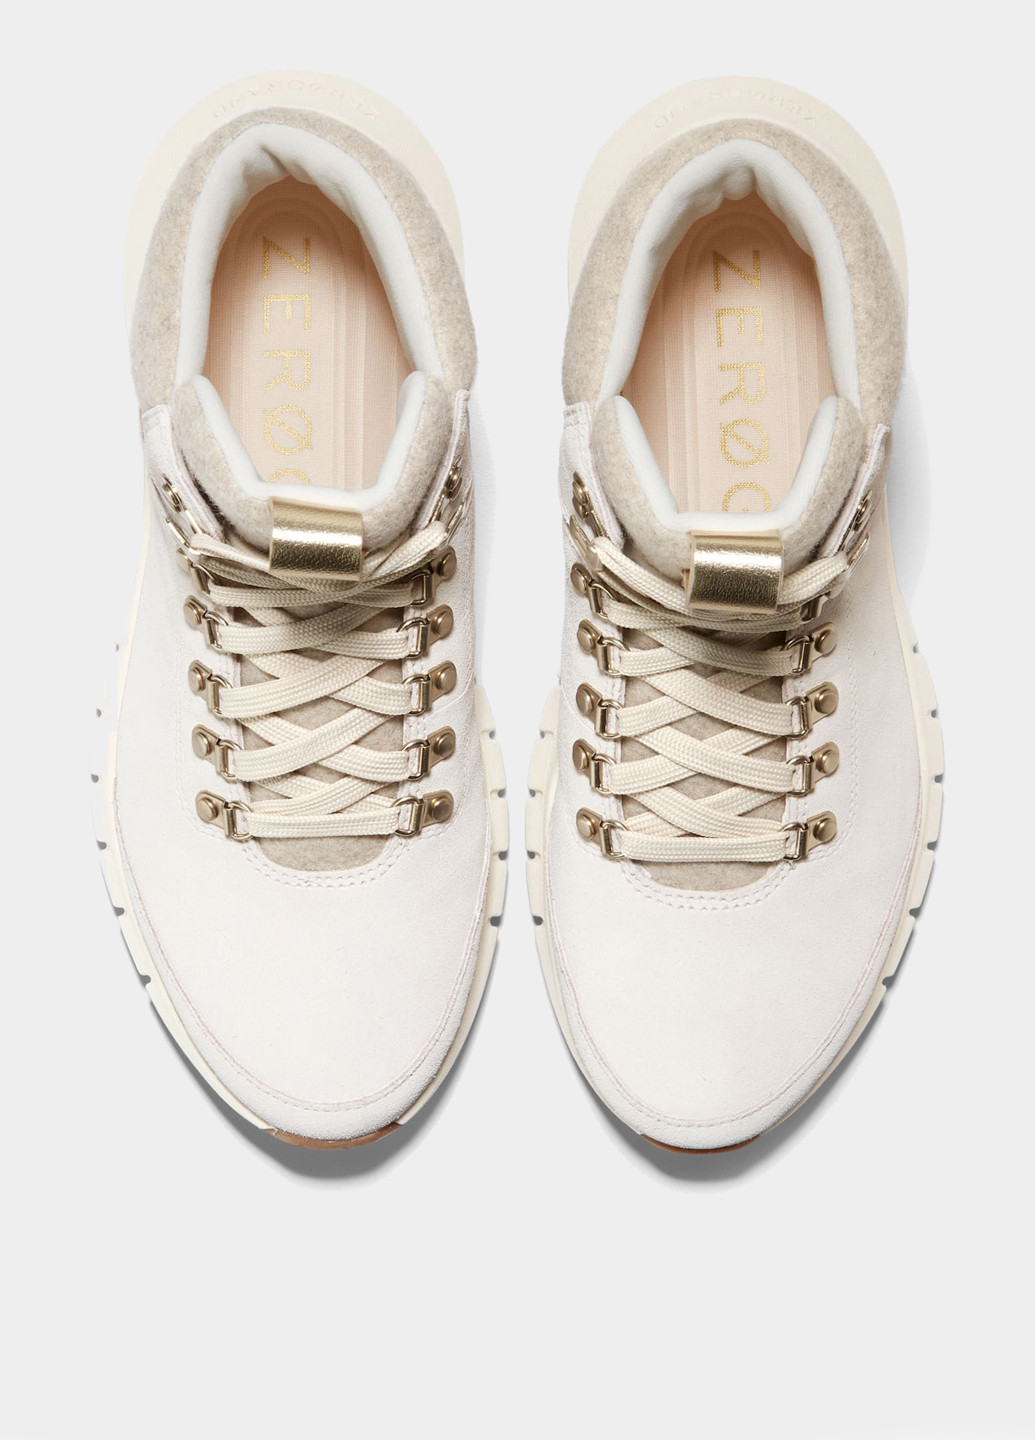 Осенние ботинки Cole Haan с белой подошвой из натуральной замши, тканевые